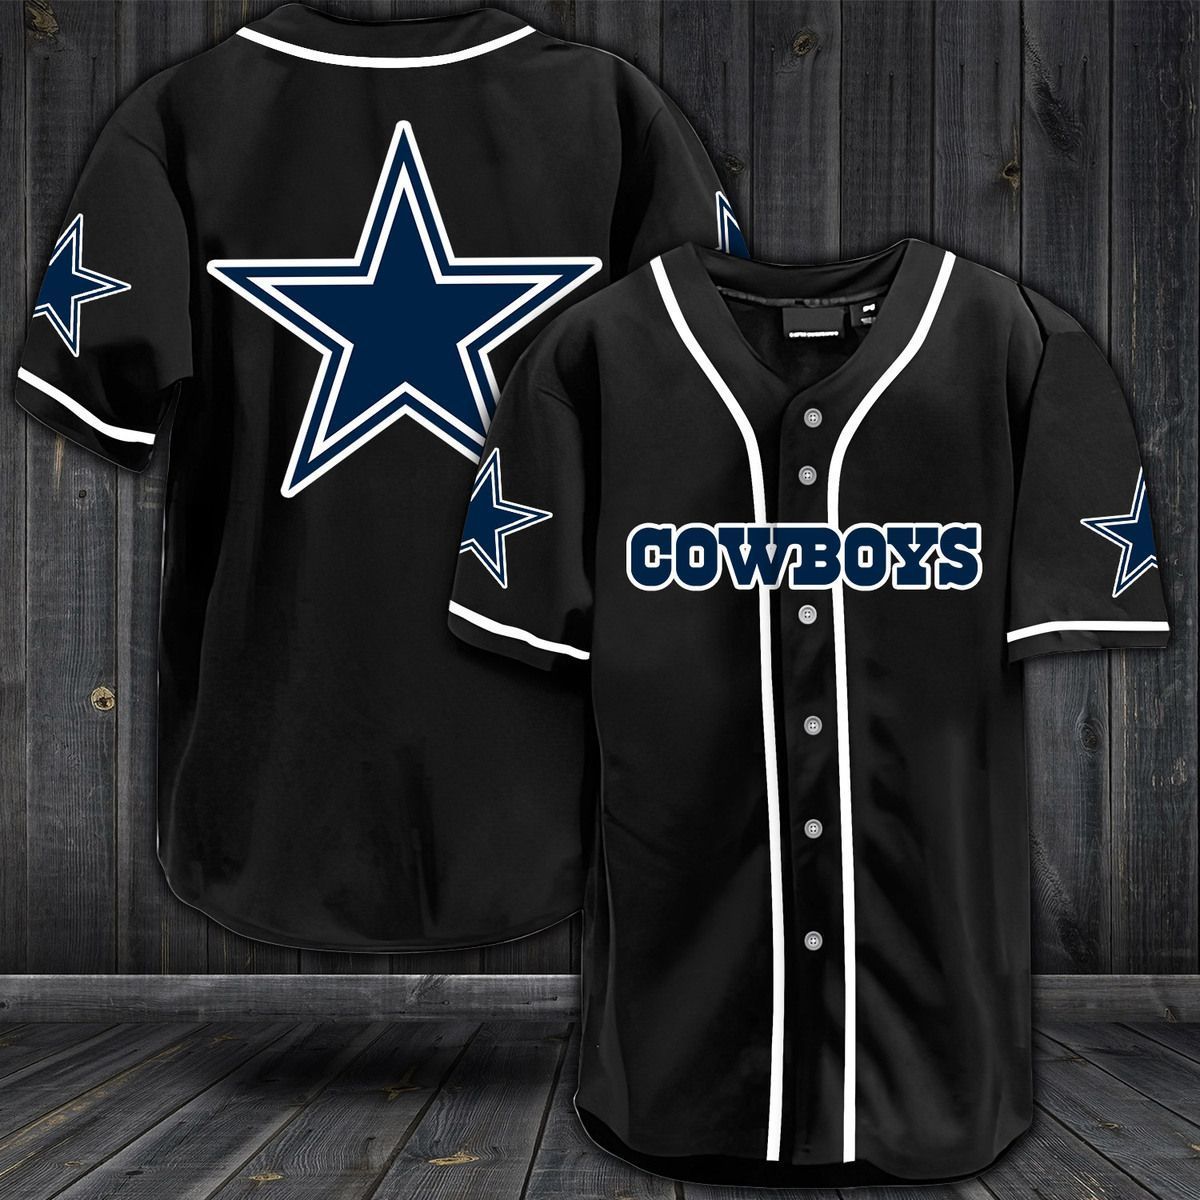 NFL Dallas Cowboys baseball jersey shirt